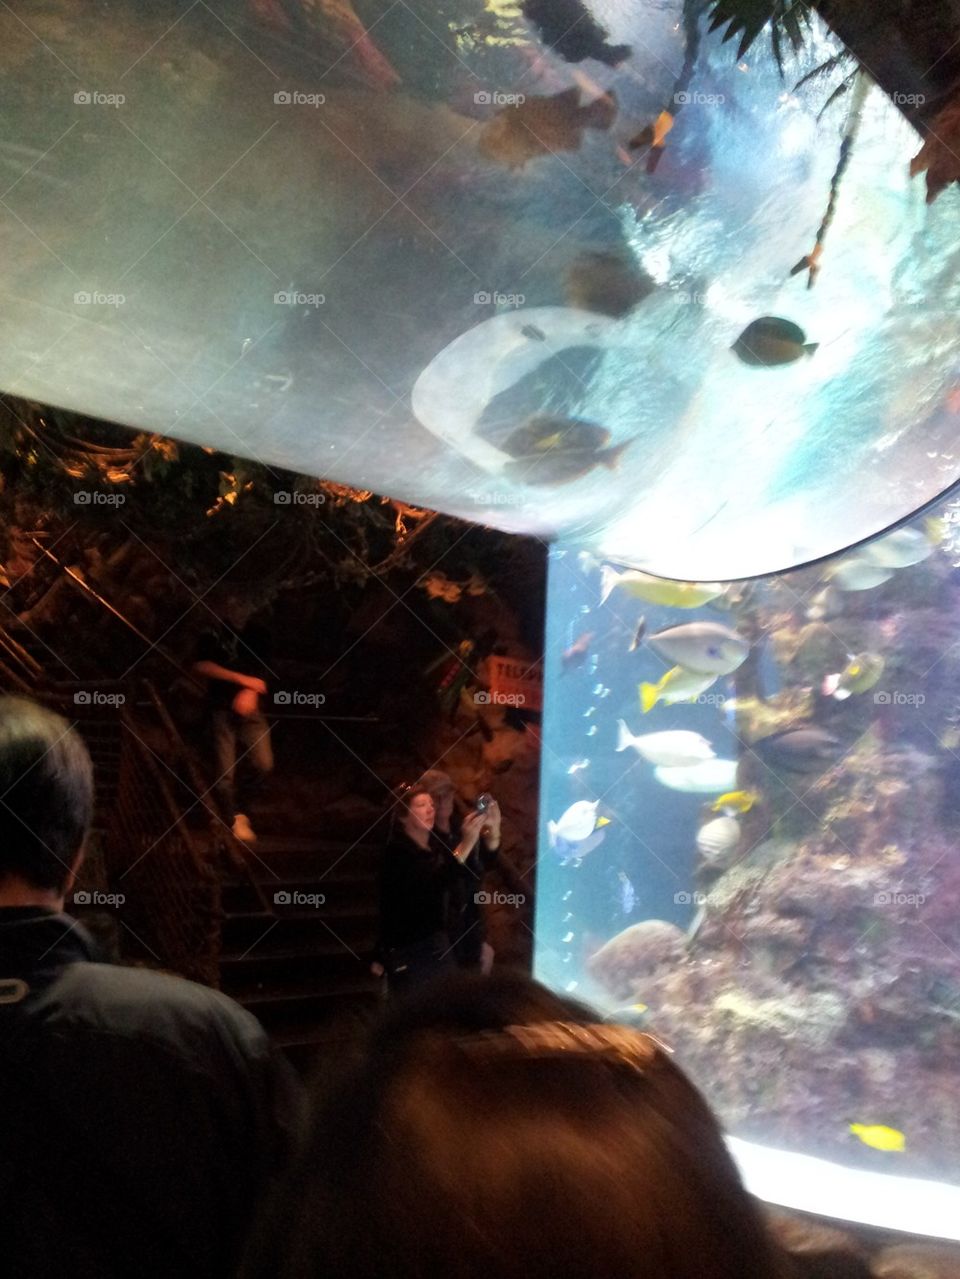 Scenic aquarium Las Vegas Rainforest Cafe at MGM